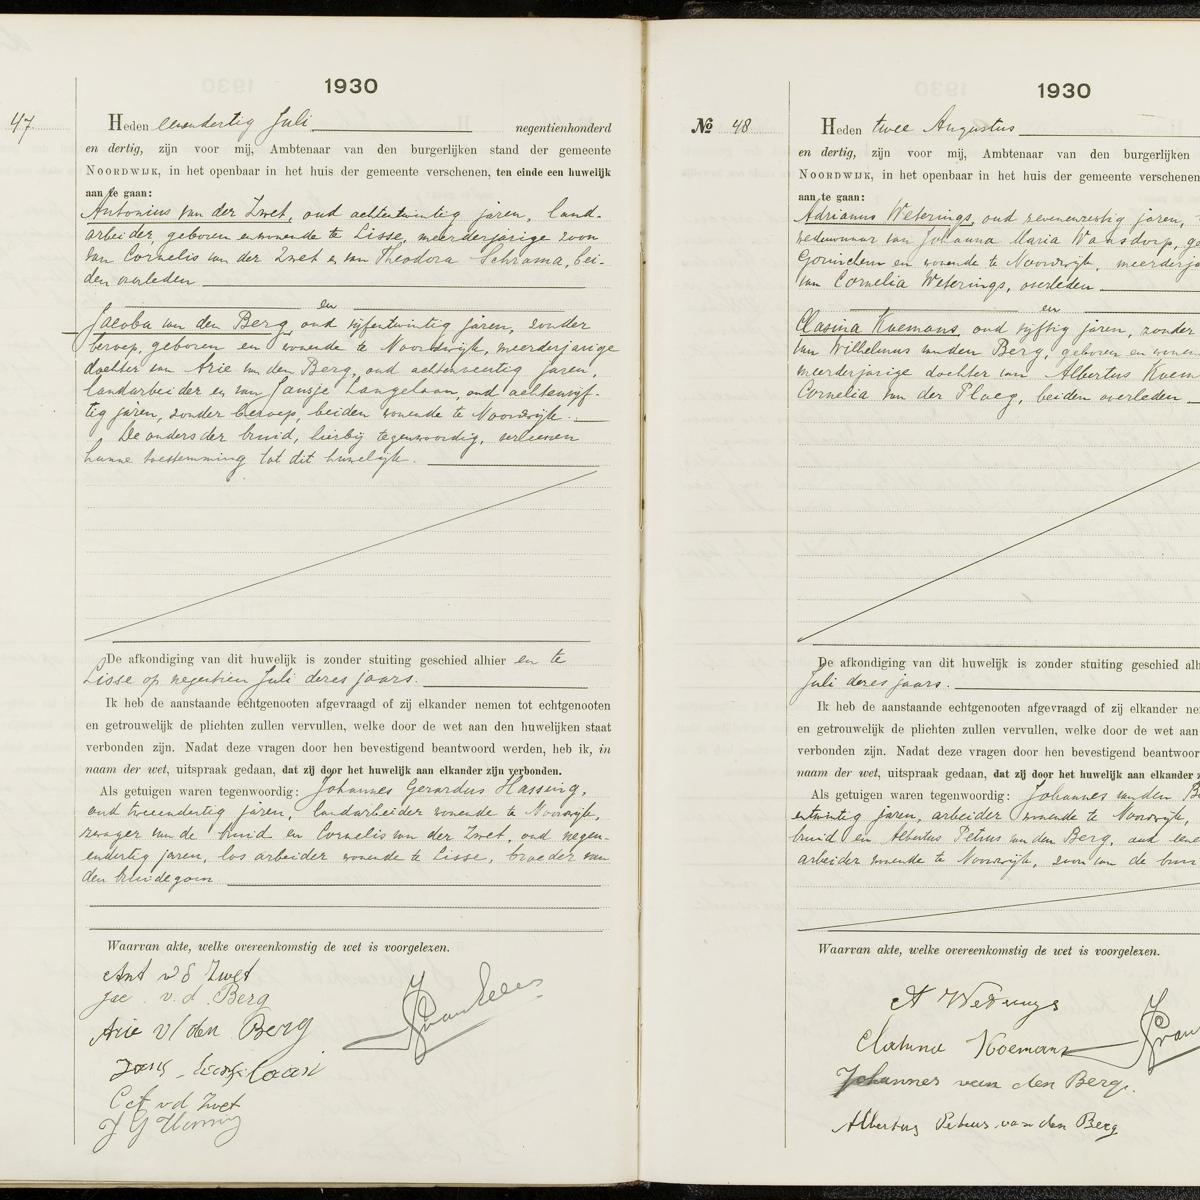 Civil registry of marriages, Noordwijk, 1930, records 47-48